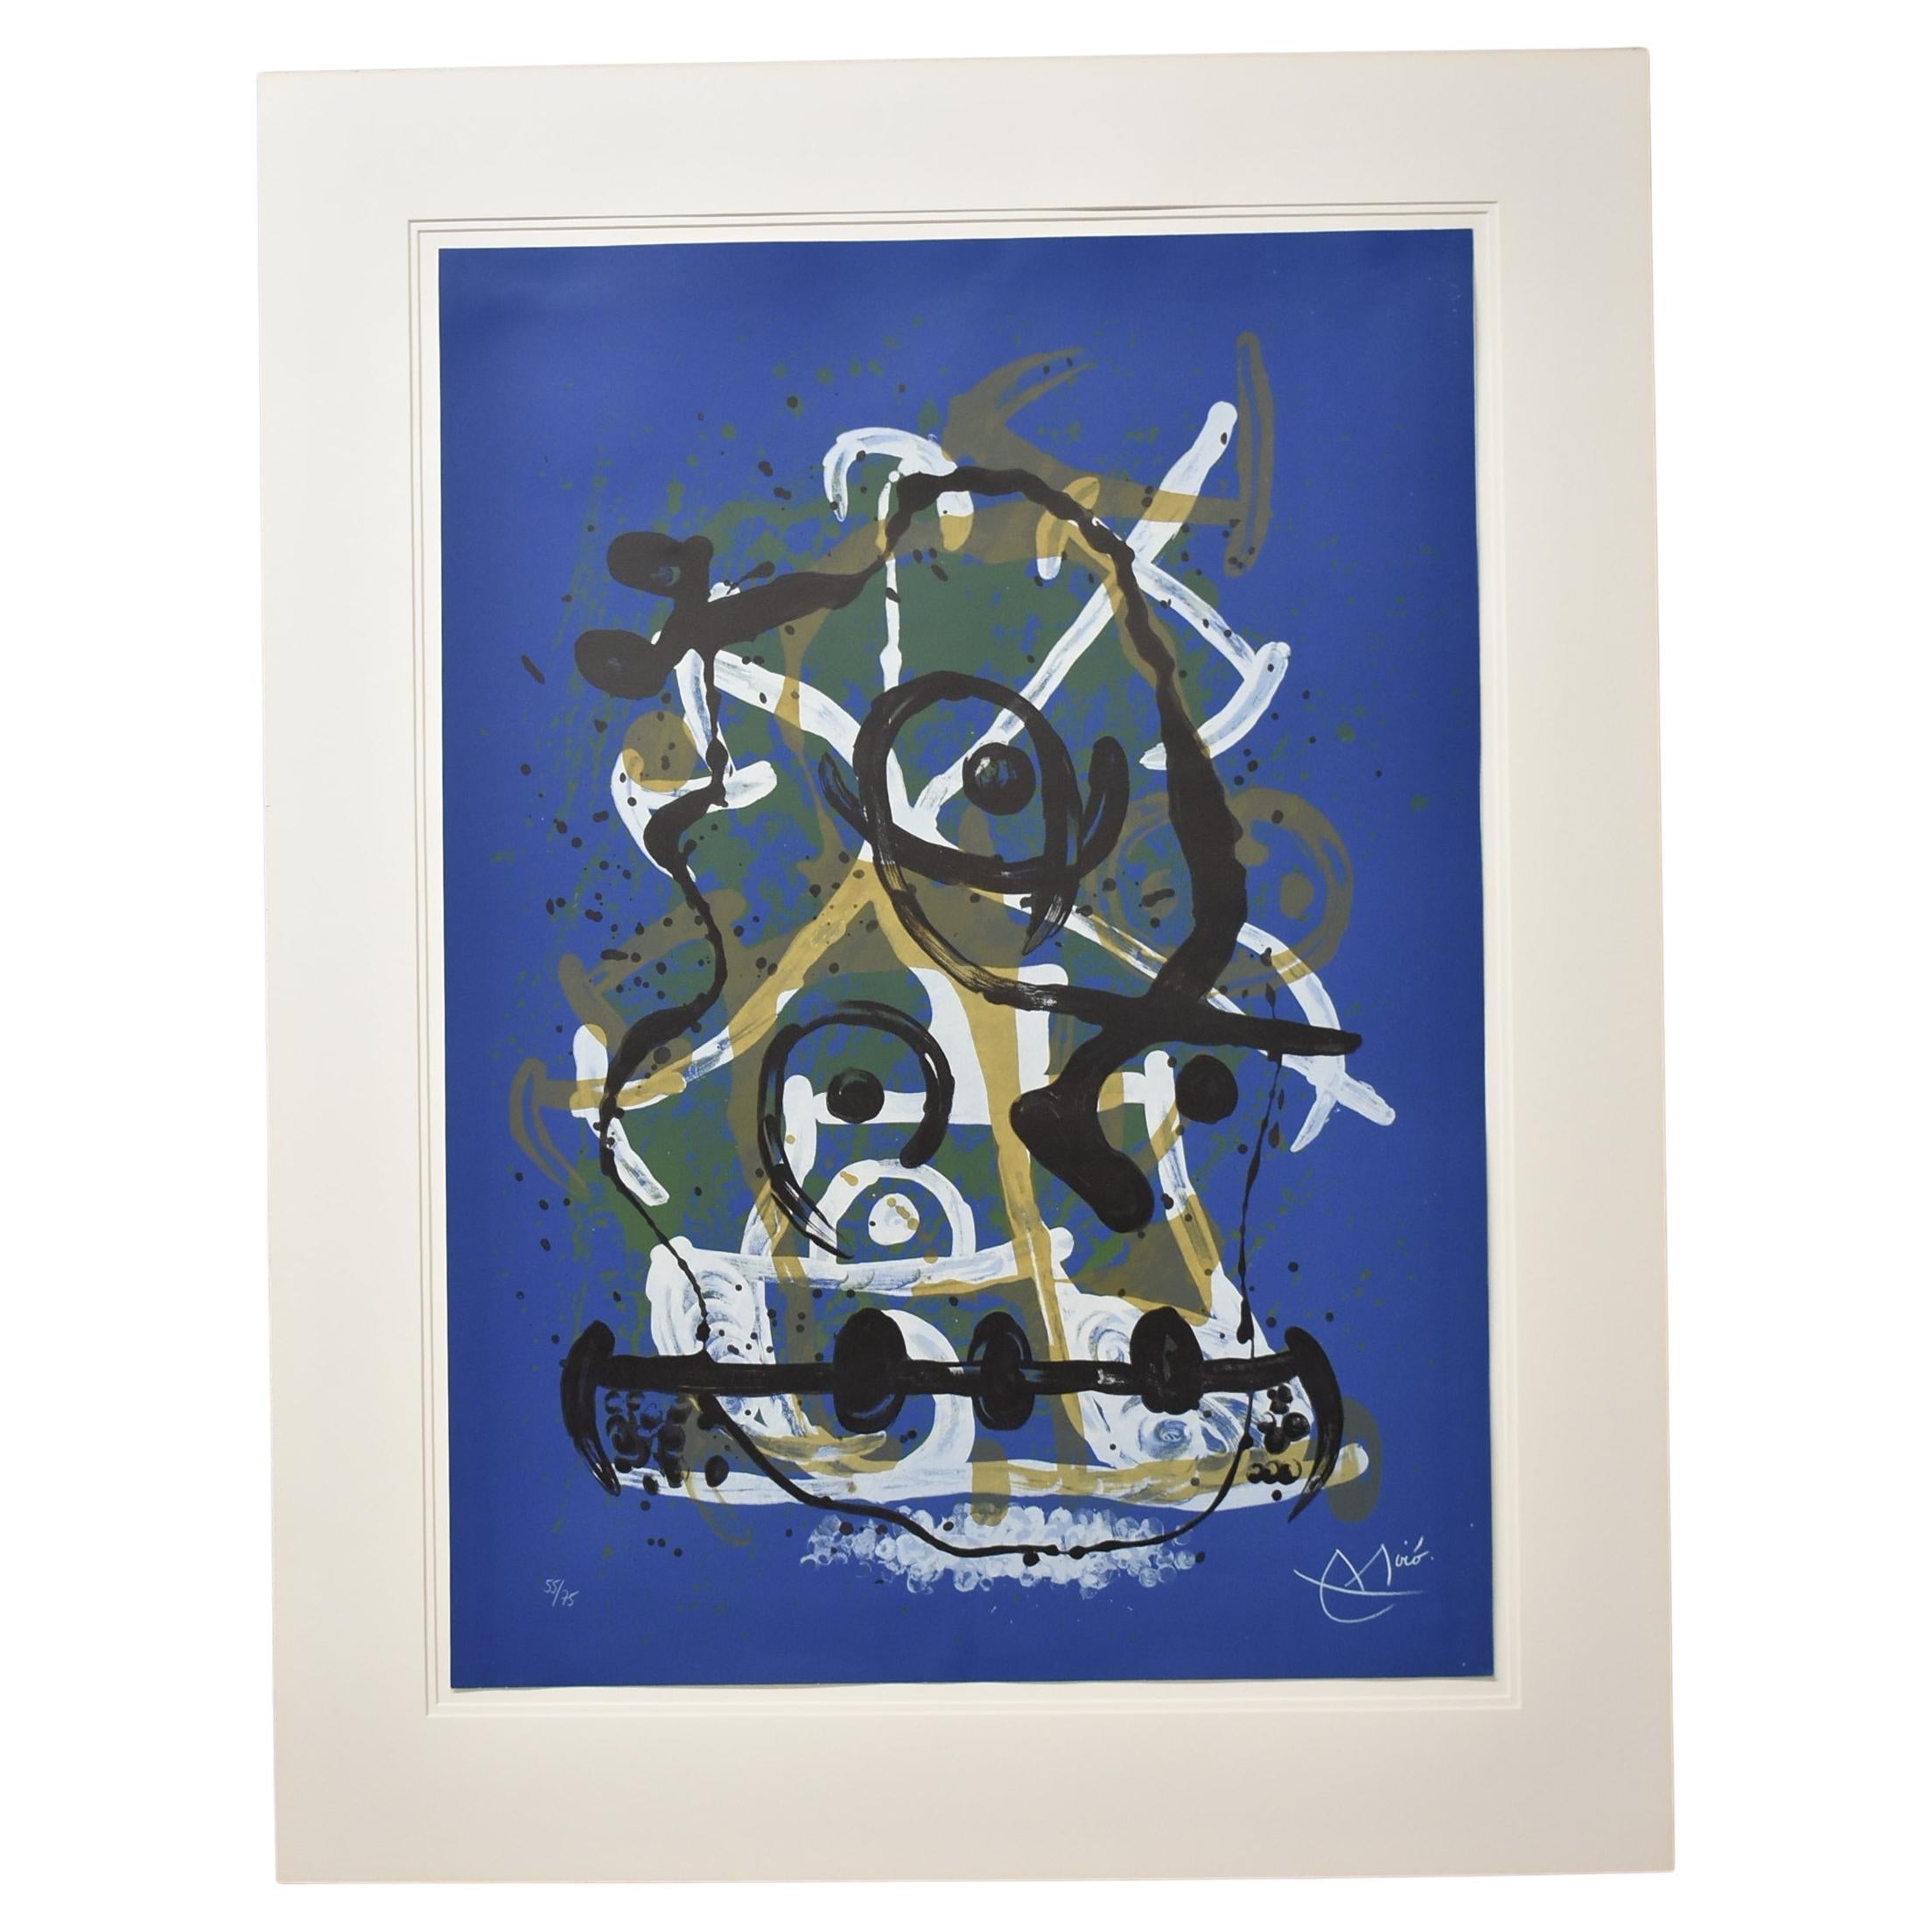 Spanische abstrakte Lithographie Chevauchee Bleu Brun von Jean Miro, signiert 55/75, 1969